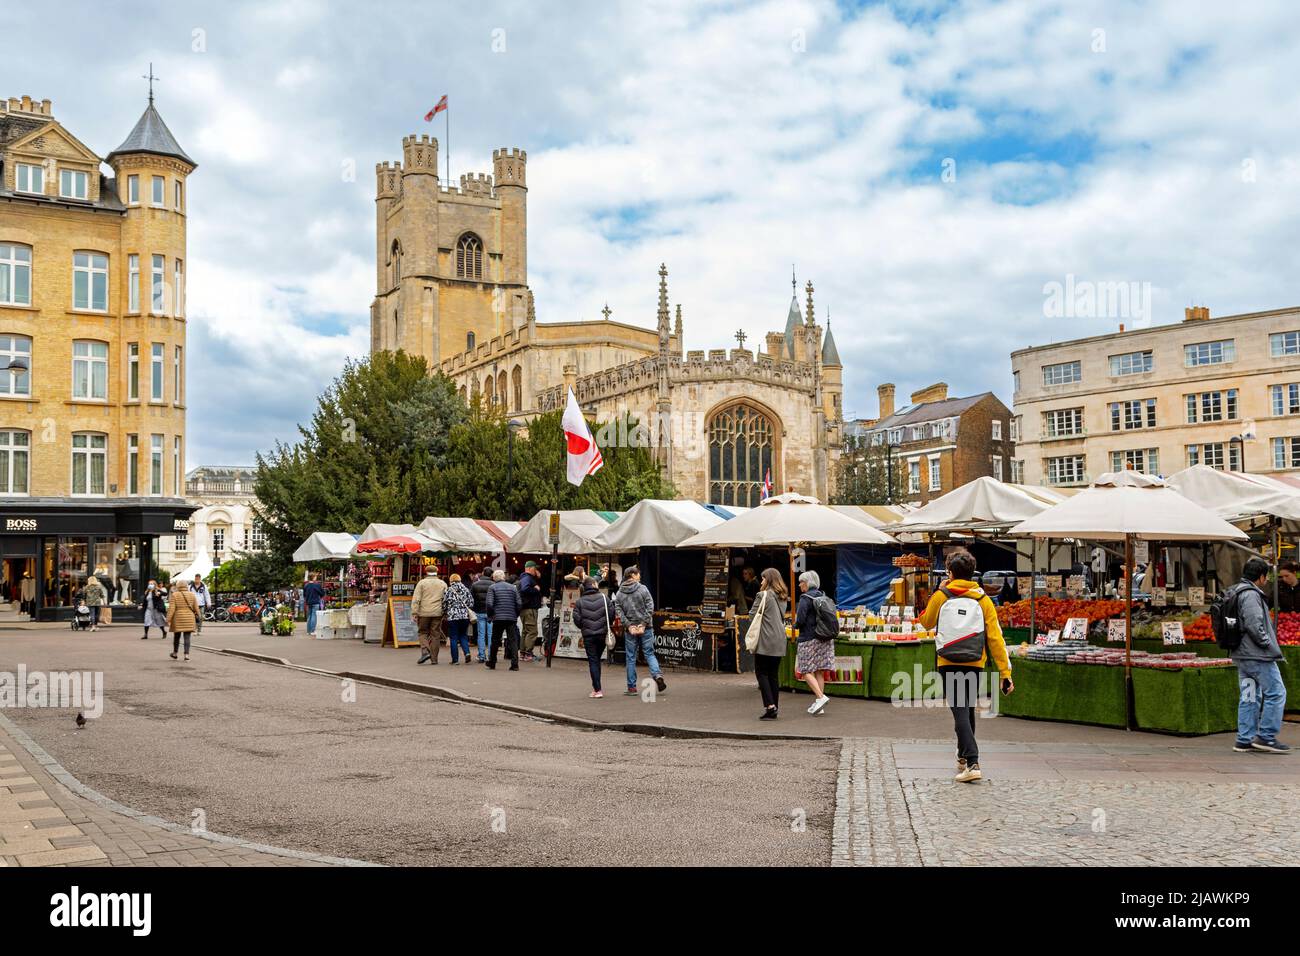 Markttag auf dem historischen Marktplatz im Zentrum von Cambridge, mit Blick auf die Kirche St. Mary the Great, Cambridge, Cambridgeshire, England. Stockfoto